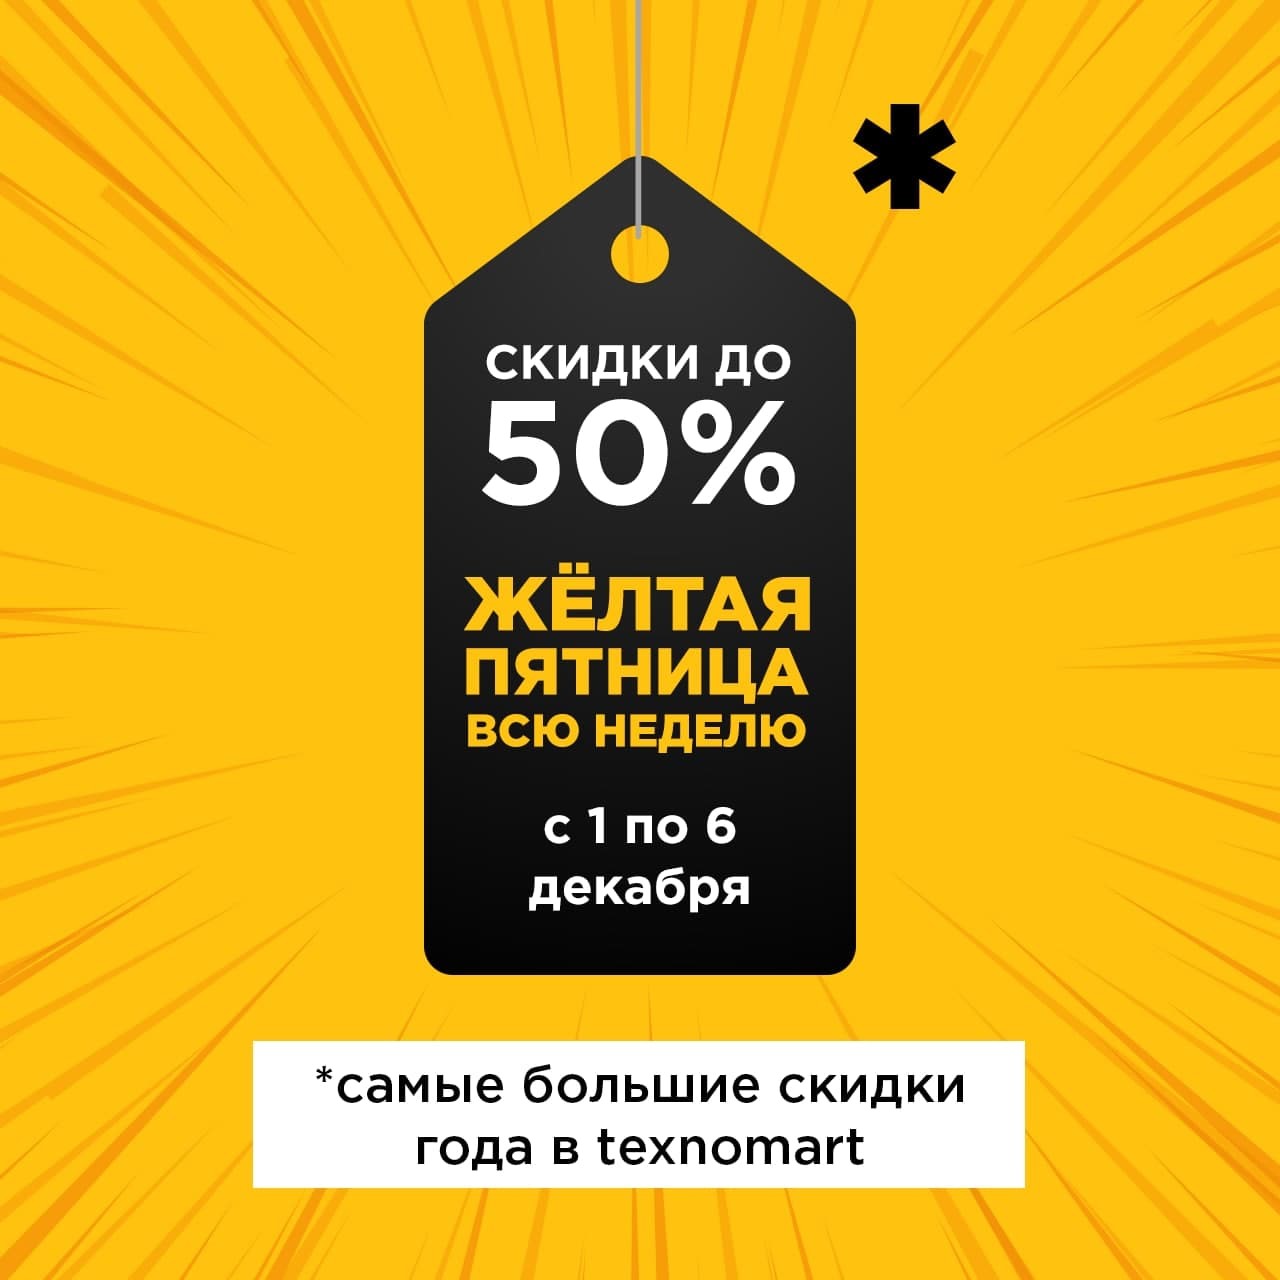 Сеть магазинов texnomart объявляет целую неделю желтой пятницы с настоящими скидками до 50%